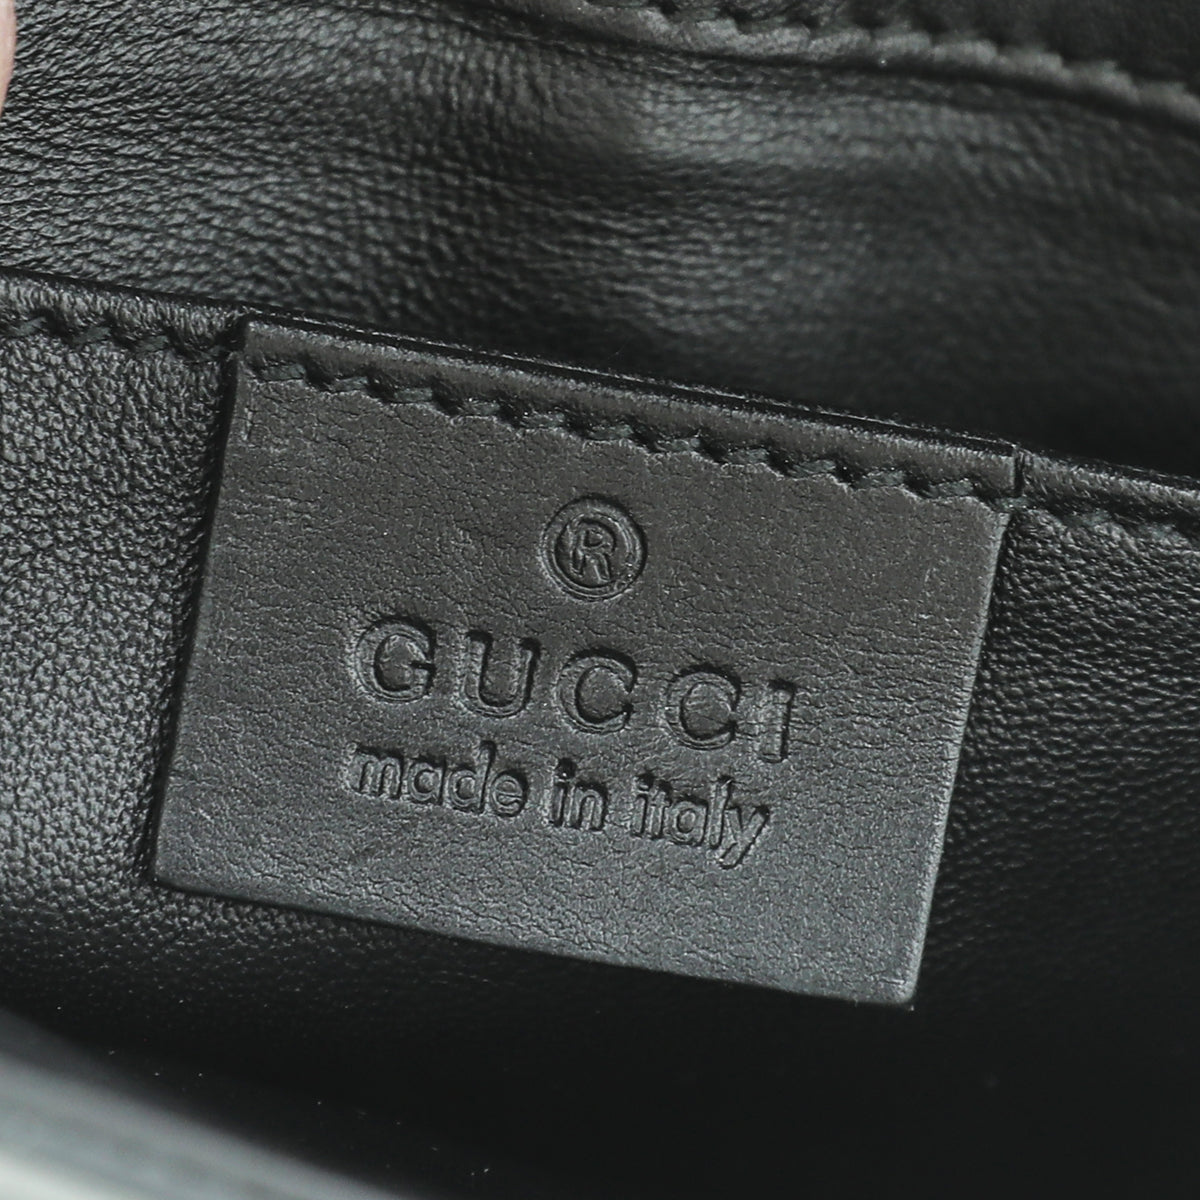 Gucci Black Emily Small Chain Small Bag